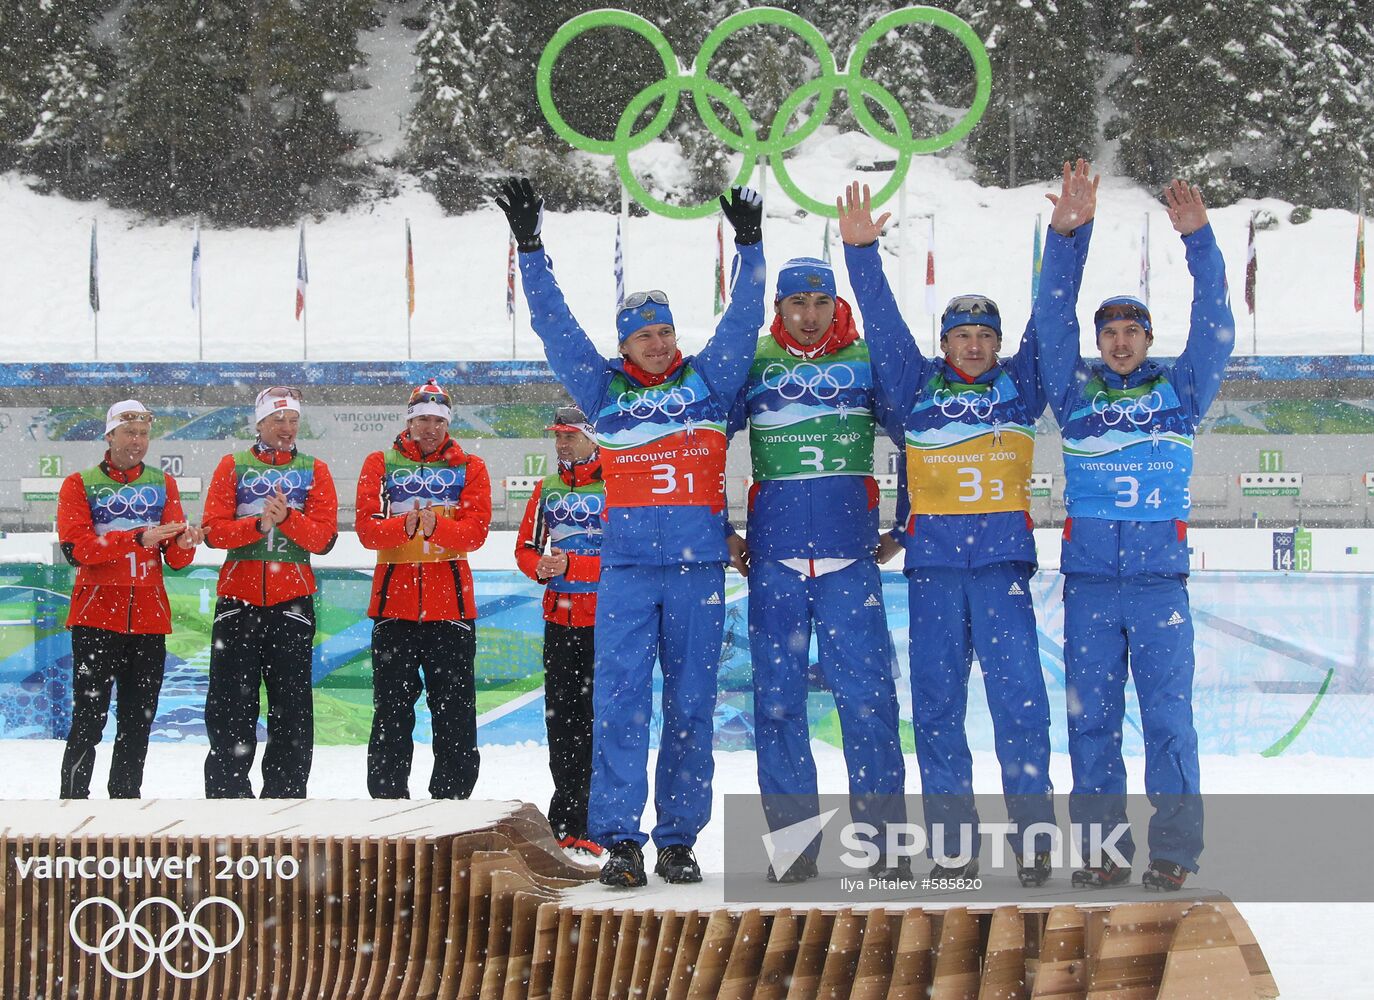 Russian biathletes win bonze in men's relay